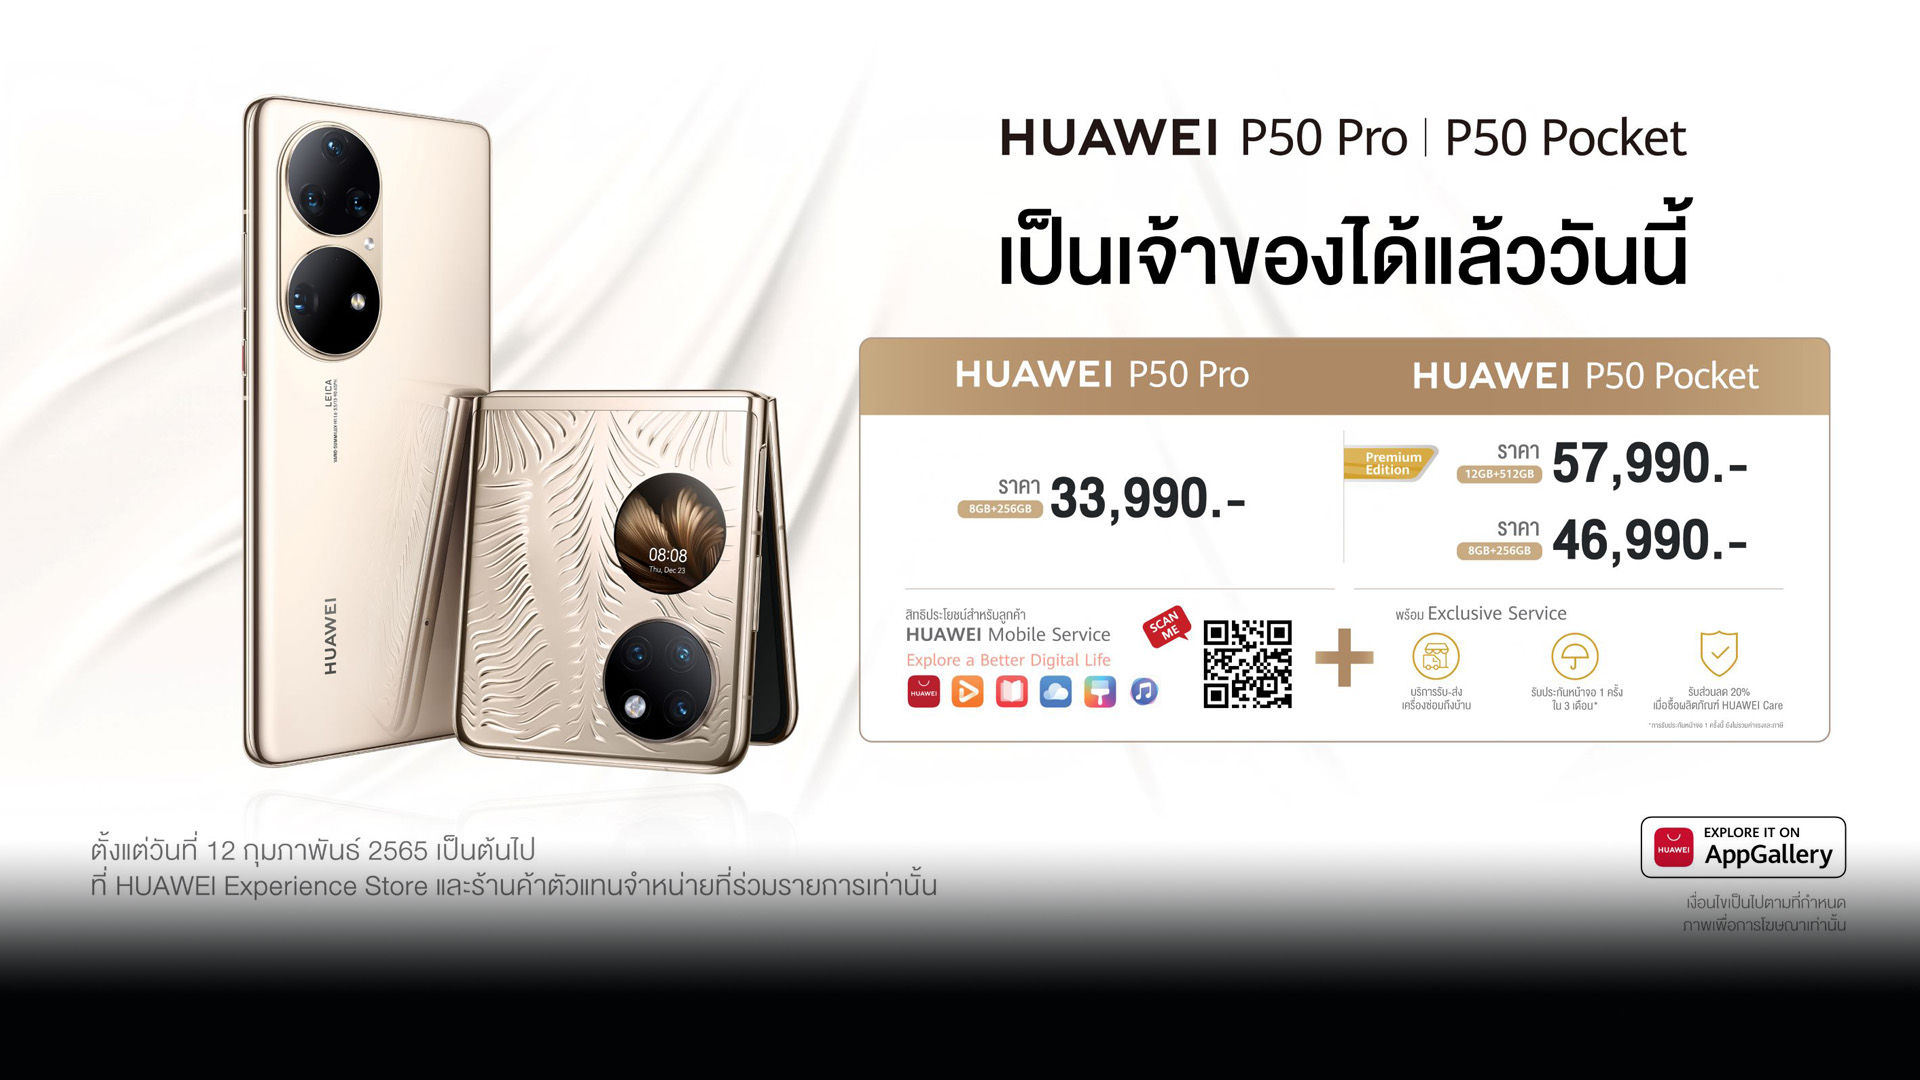 จำหน่ายแล้ววันนี้ HUAWEI P50 Pro และ HUAWEI P50 Pocket งสมาร์ตโฟนเรือธงตำนานแห่งกล้องโปร